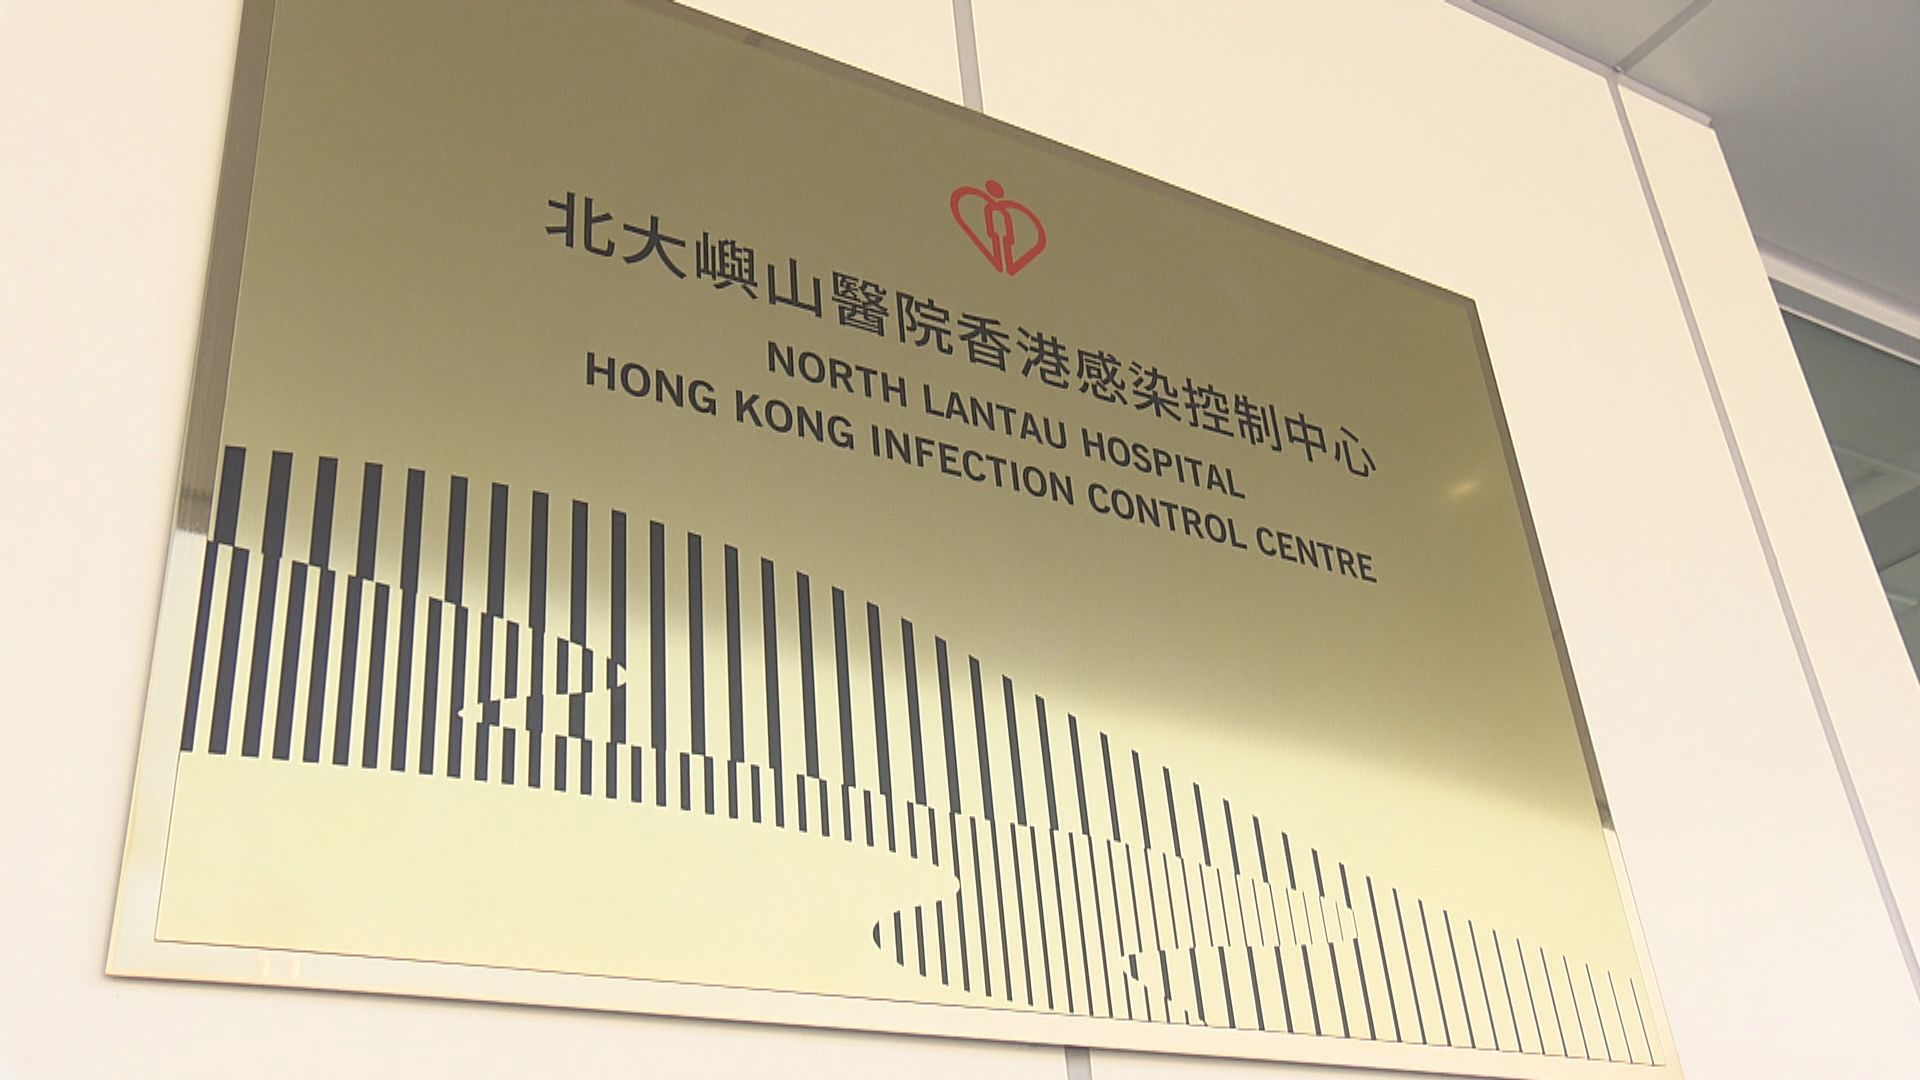 北大嶼山醫院香港感染控制中心病格內發現真菌